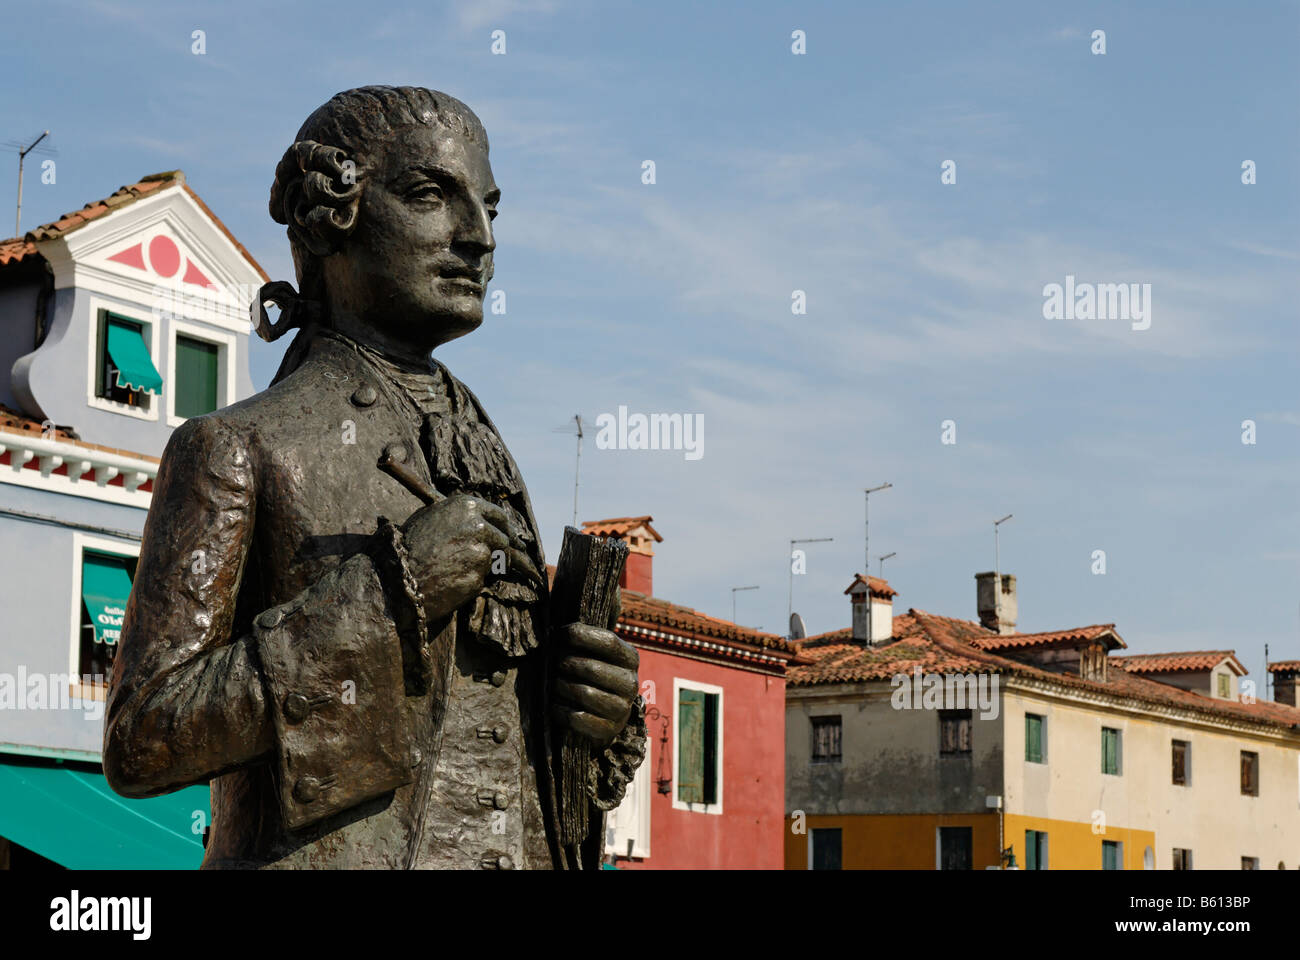 Monument, Baldassare Galuppi detto Buranello, composer, located on Piazza Galuppi on Burano, an island in the Venetian Lagoon Stock Photo